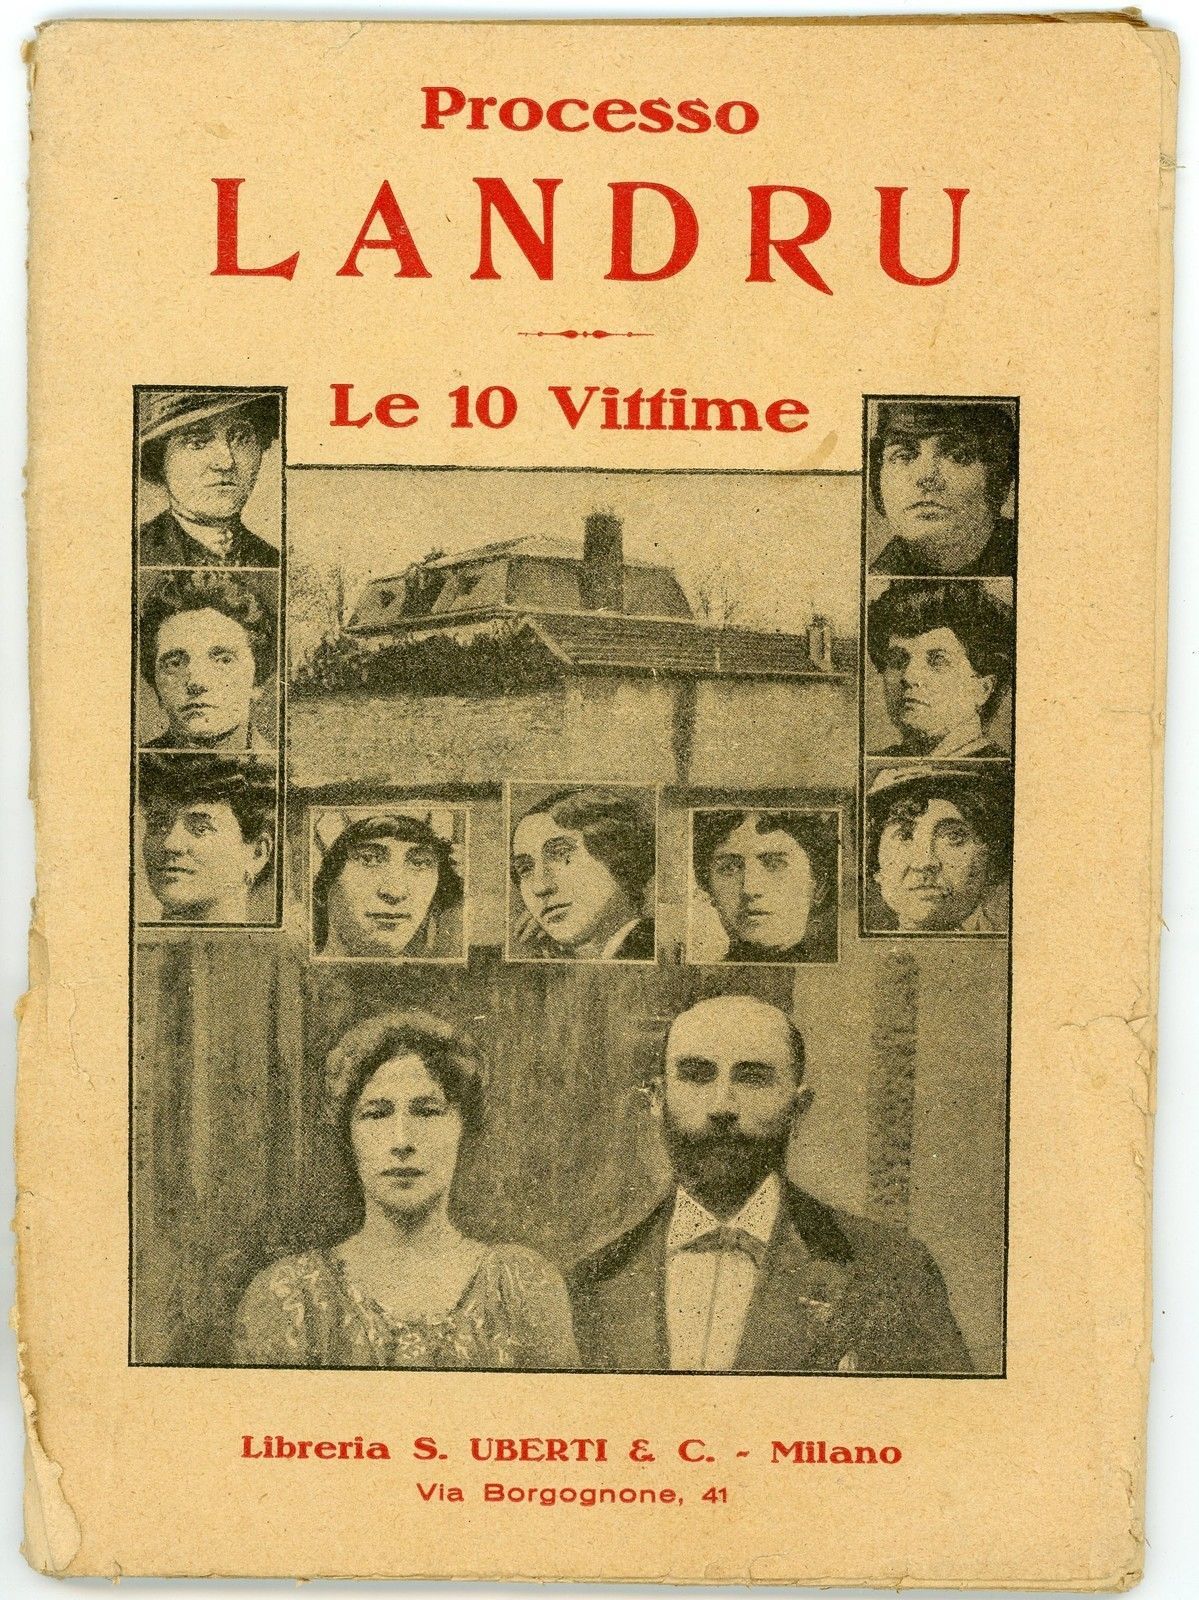 Alla scoperta dei libricini perduti dei processi più famosi: “Processo Landru: le 10 vittime”